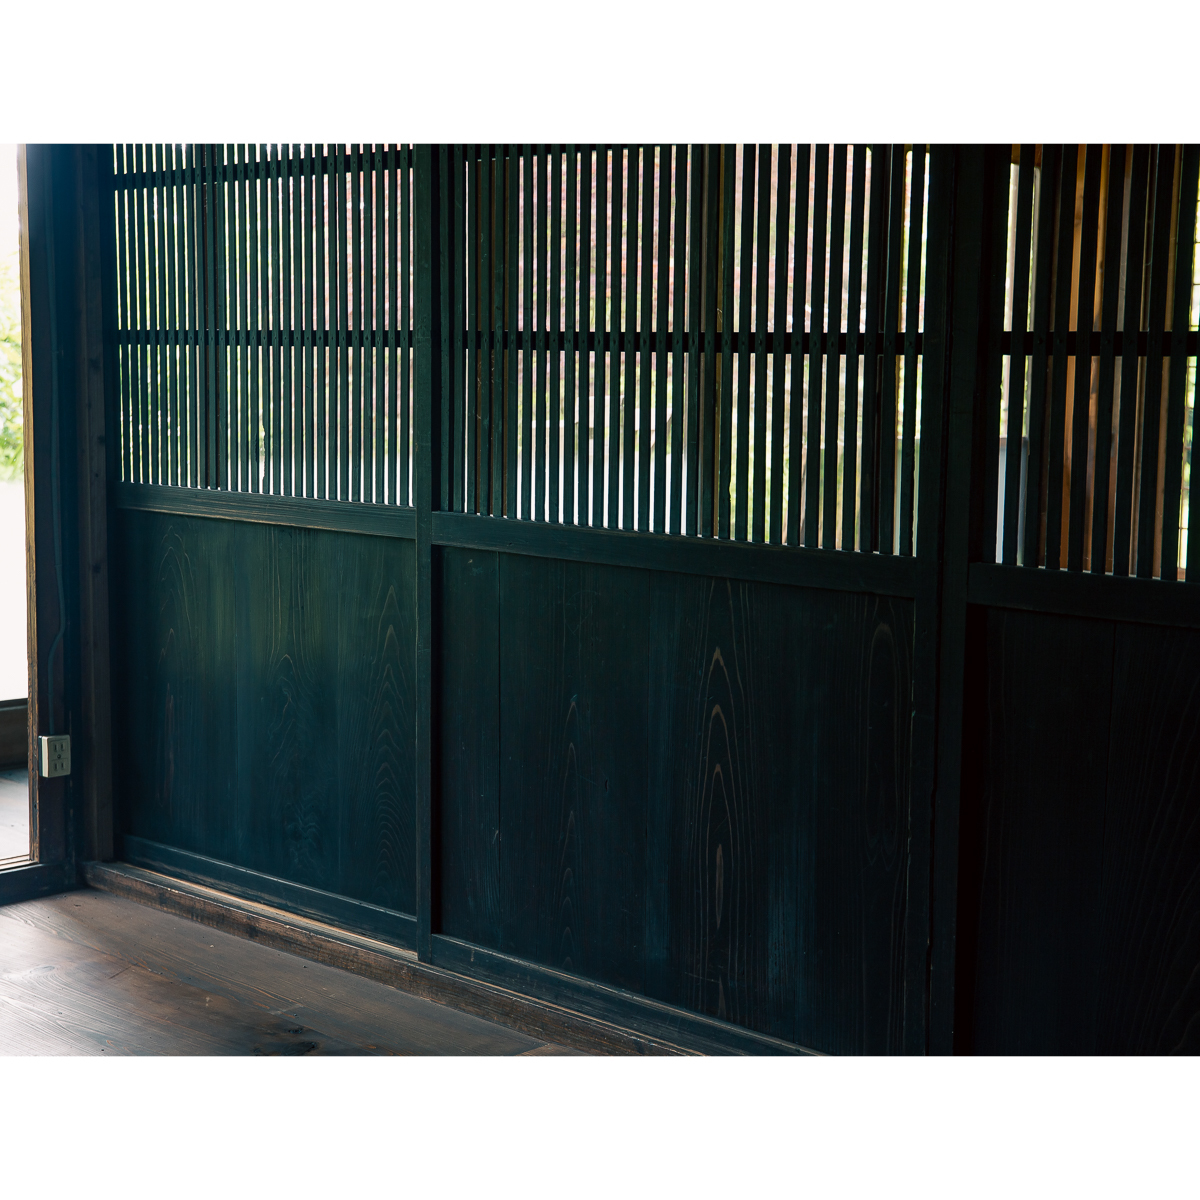 [ старый дом в японском стиле. двери ] Taisho период. тысяч основной . дверь 4 листов / ширина 930 высота 1765 толщина 32/. дверь раздвижная дверь деревянная дверь из дерева двери старый двери / магазин салон старый дом в японском стиле модифицировано оборудование преобразование DIY